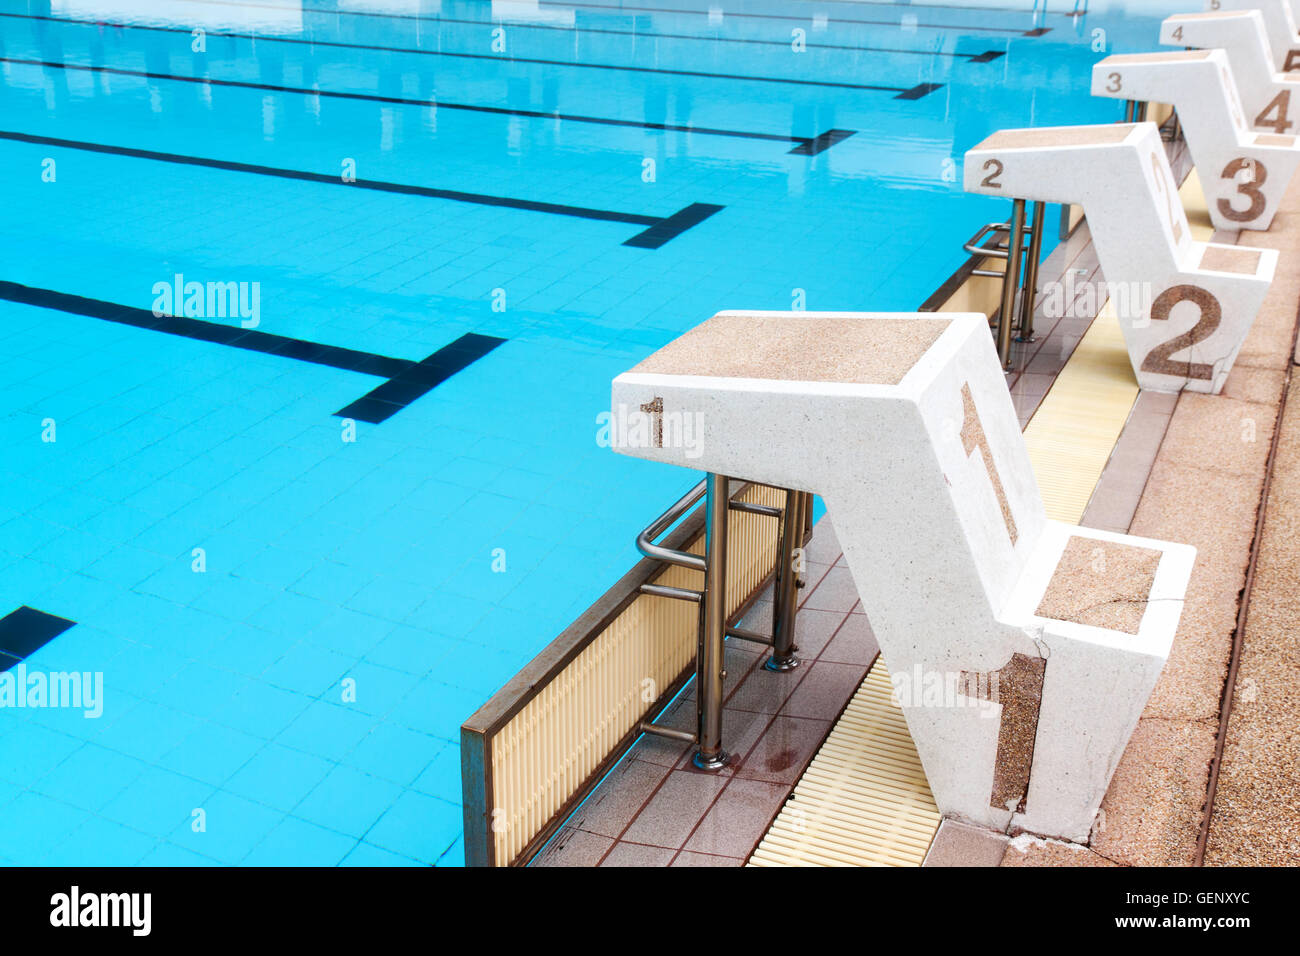 L'eau bleu piscine à vagues reflète avec la lumière du soleil , blue tile ceramic de natation course et sports d'eau. Banque D'Images